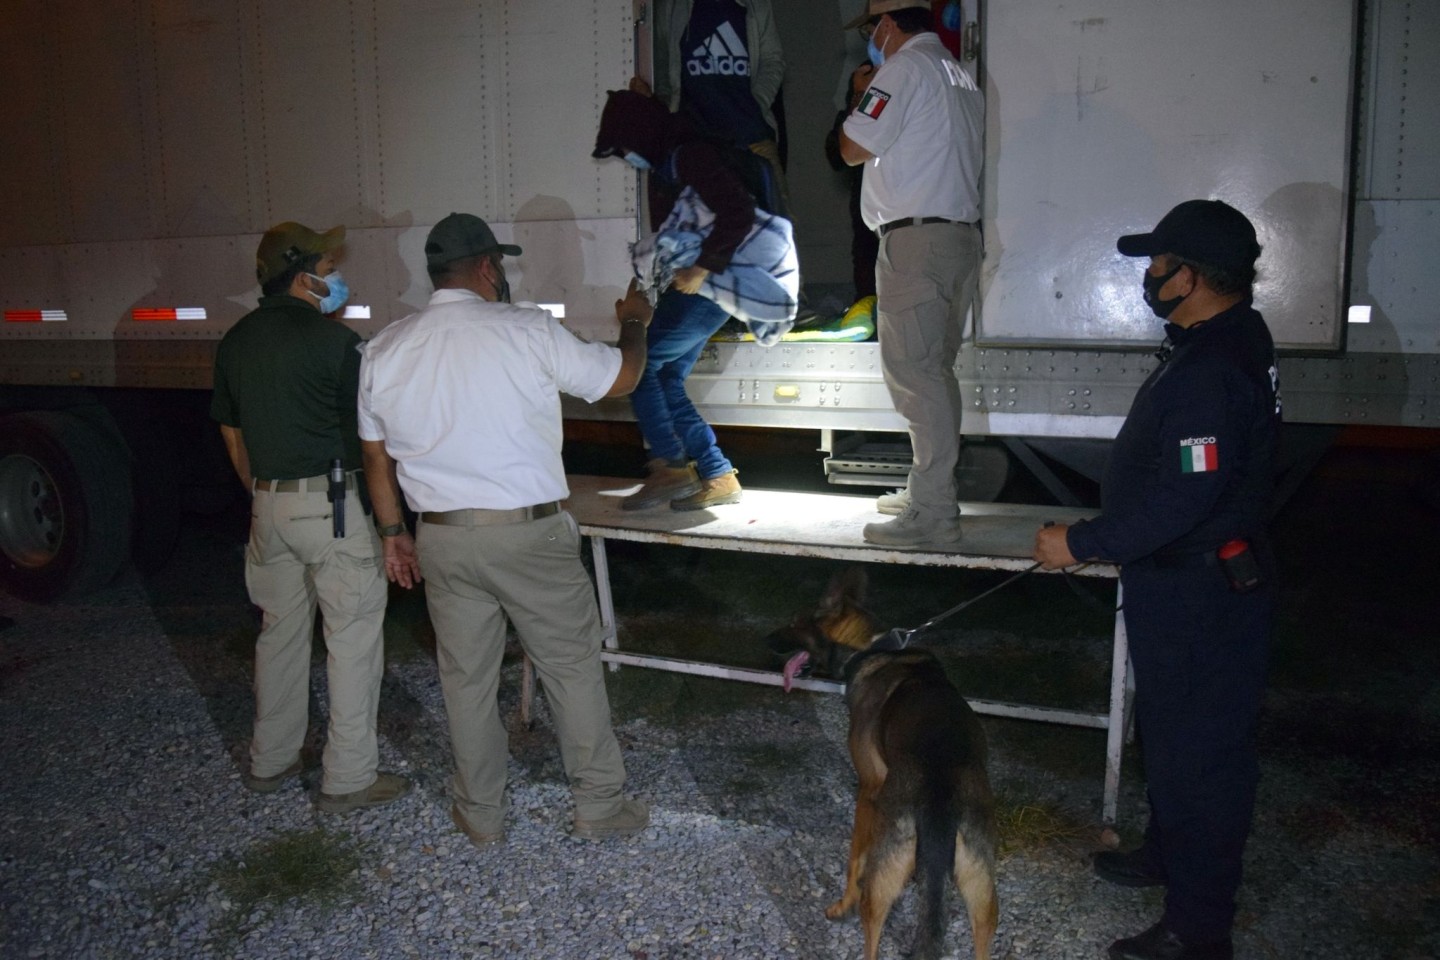 Polizisten und Offiziellle helfen Migranten aus Sattelzügen. Mexikanische Soldaten haben in den Aufliegern dreier Sattelzüge insgesamt 652 mittelamerikanische Migranten in versiegelten Kü...